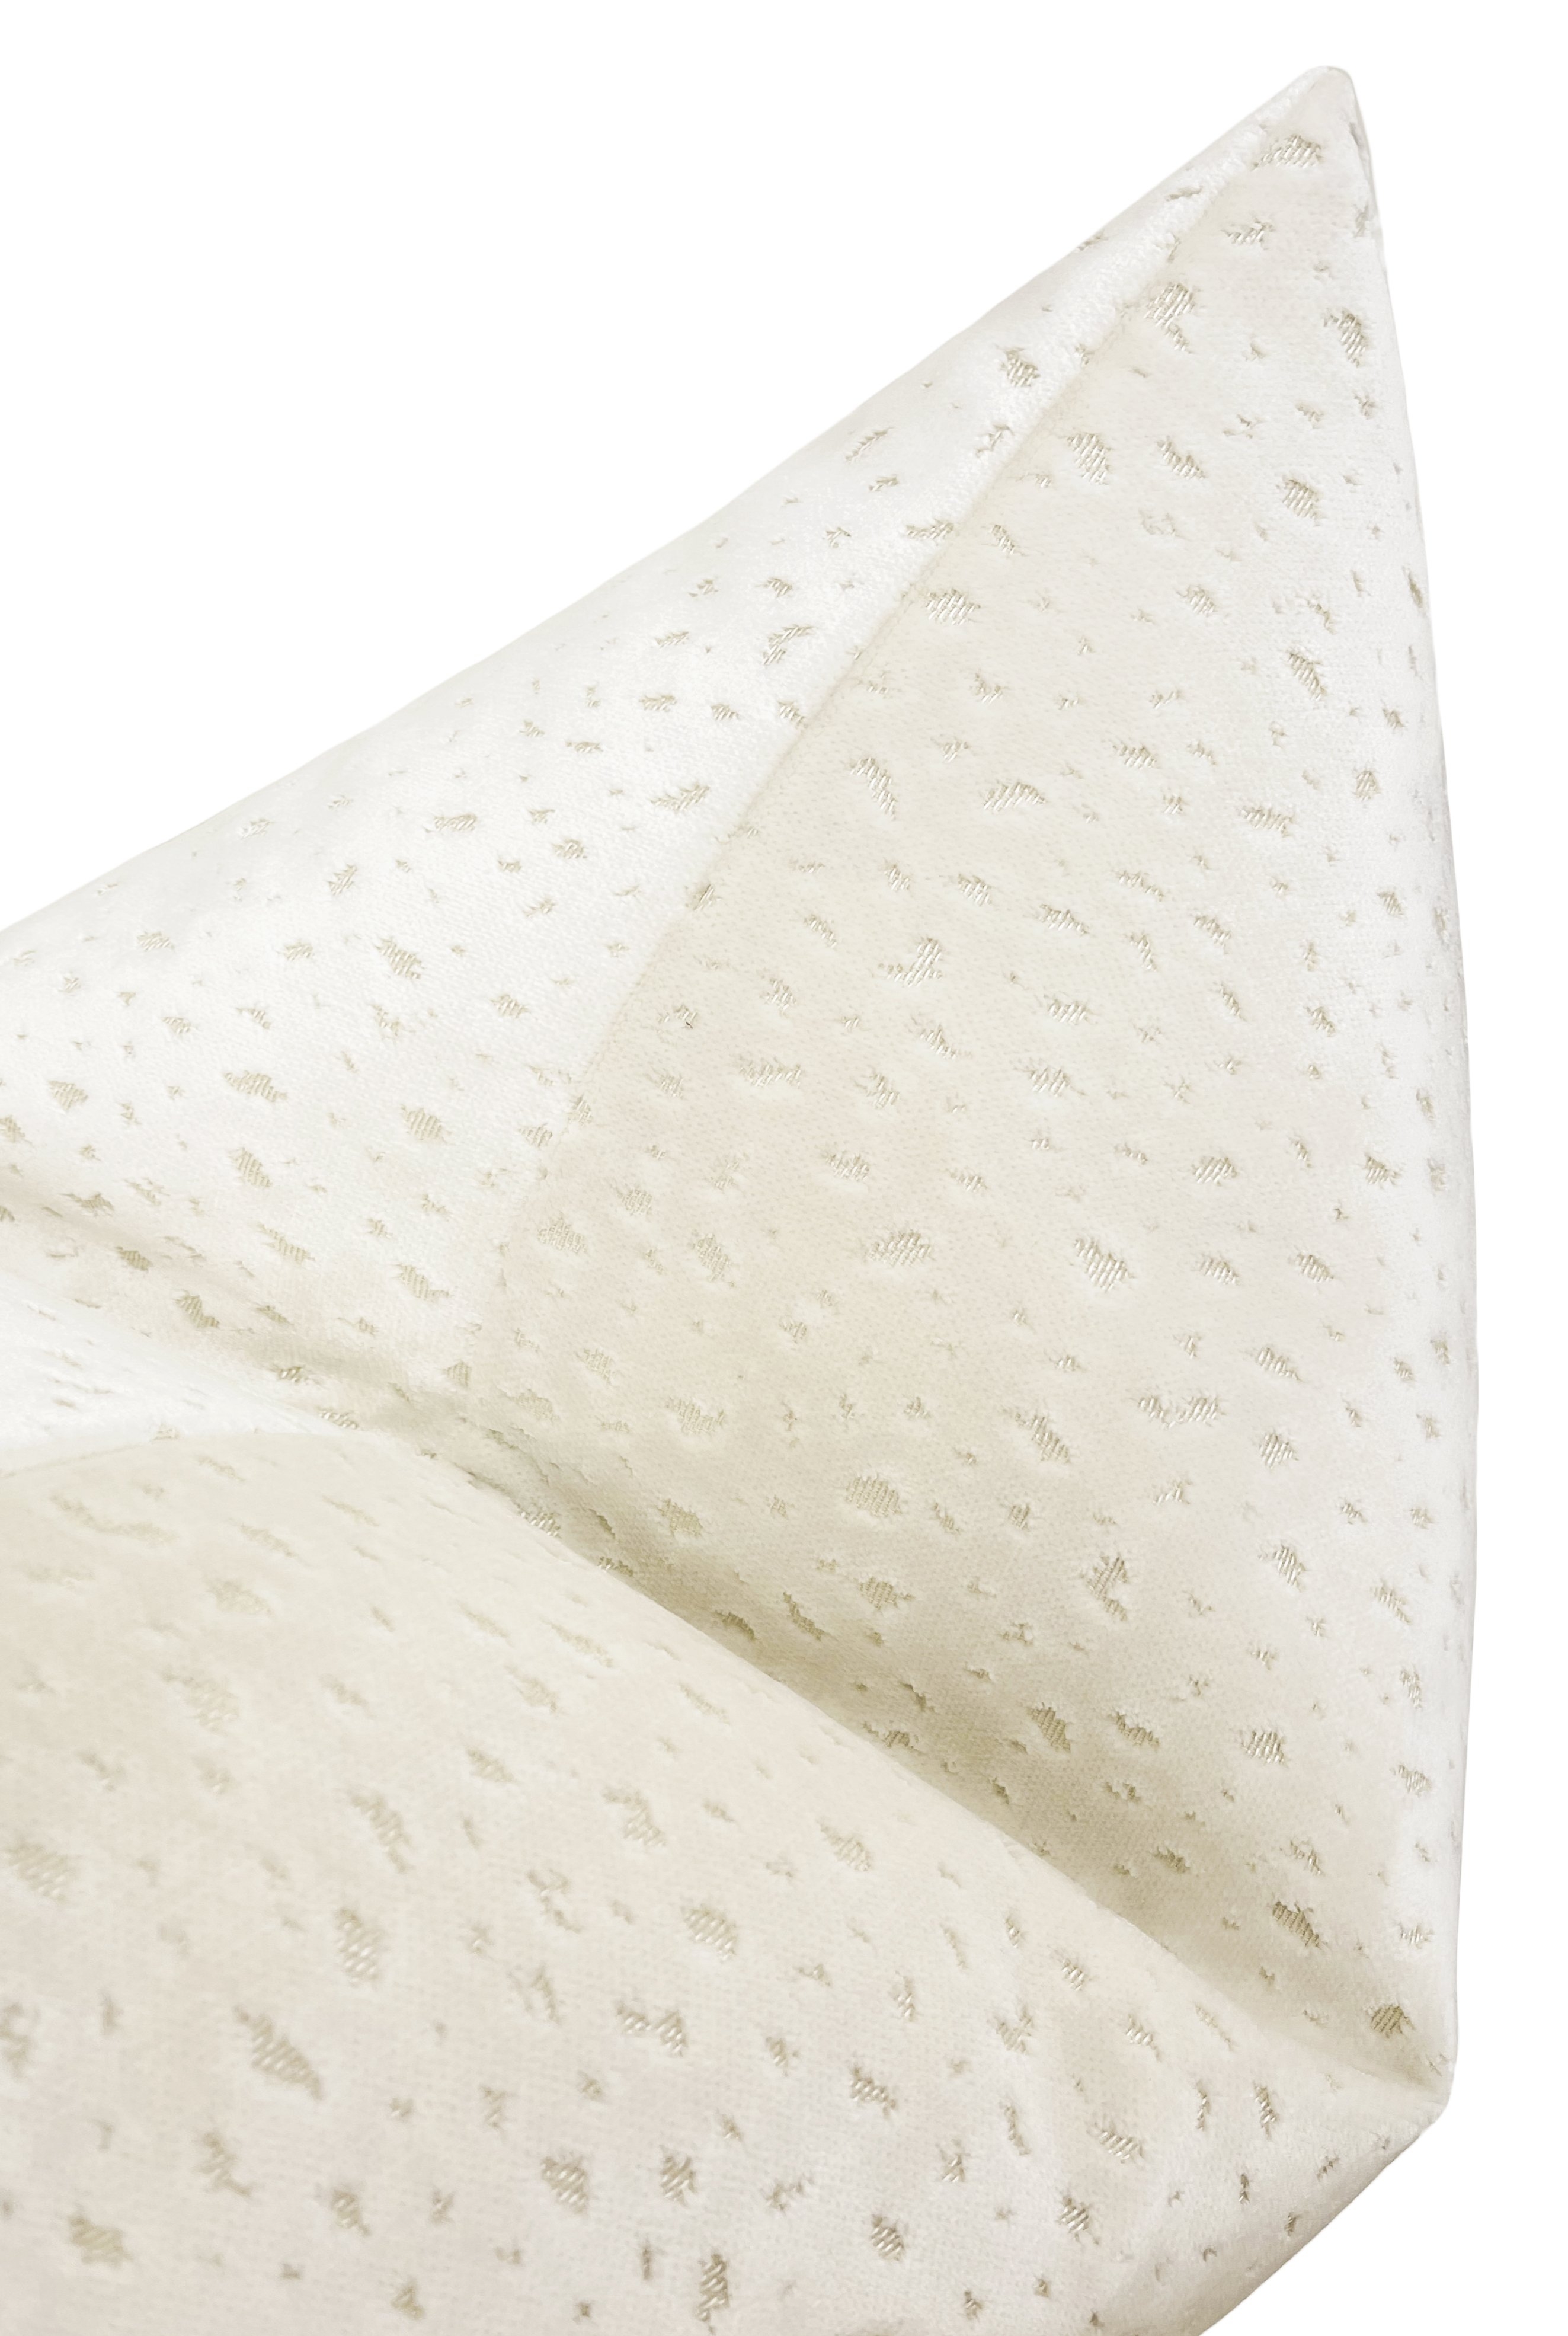 Antelope Cut Velvet Pillow Cover, Alabaster, 18" x 18" - Image 1